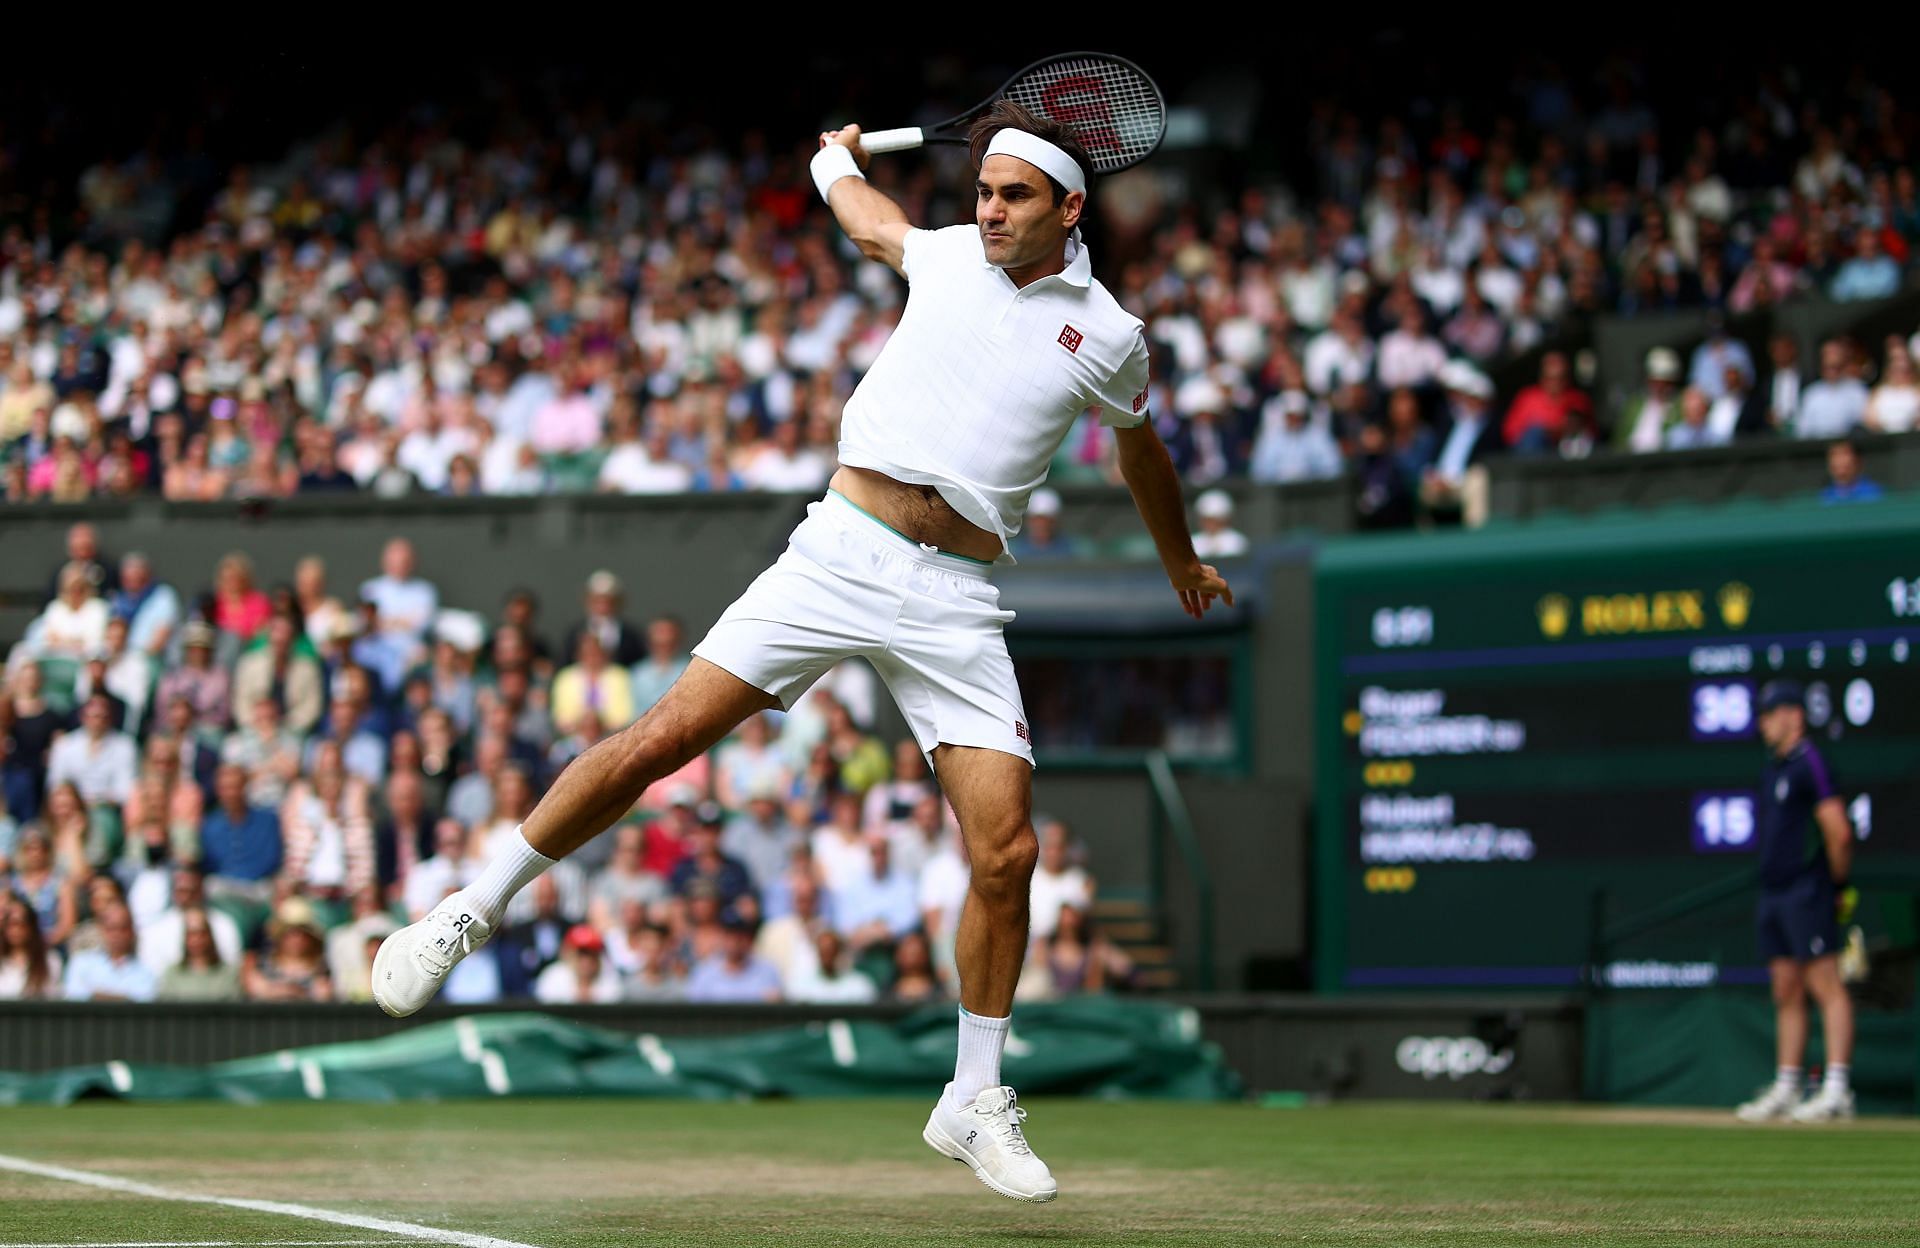 Roger Federer plays a backhand against Hubert Hurkacz at Wimbledon 2021